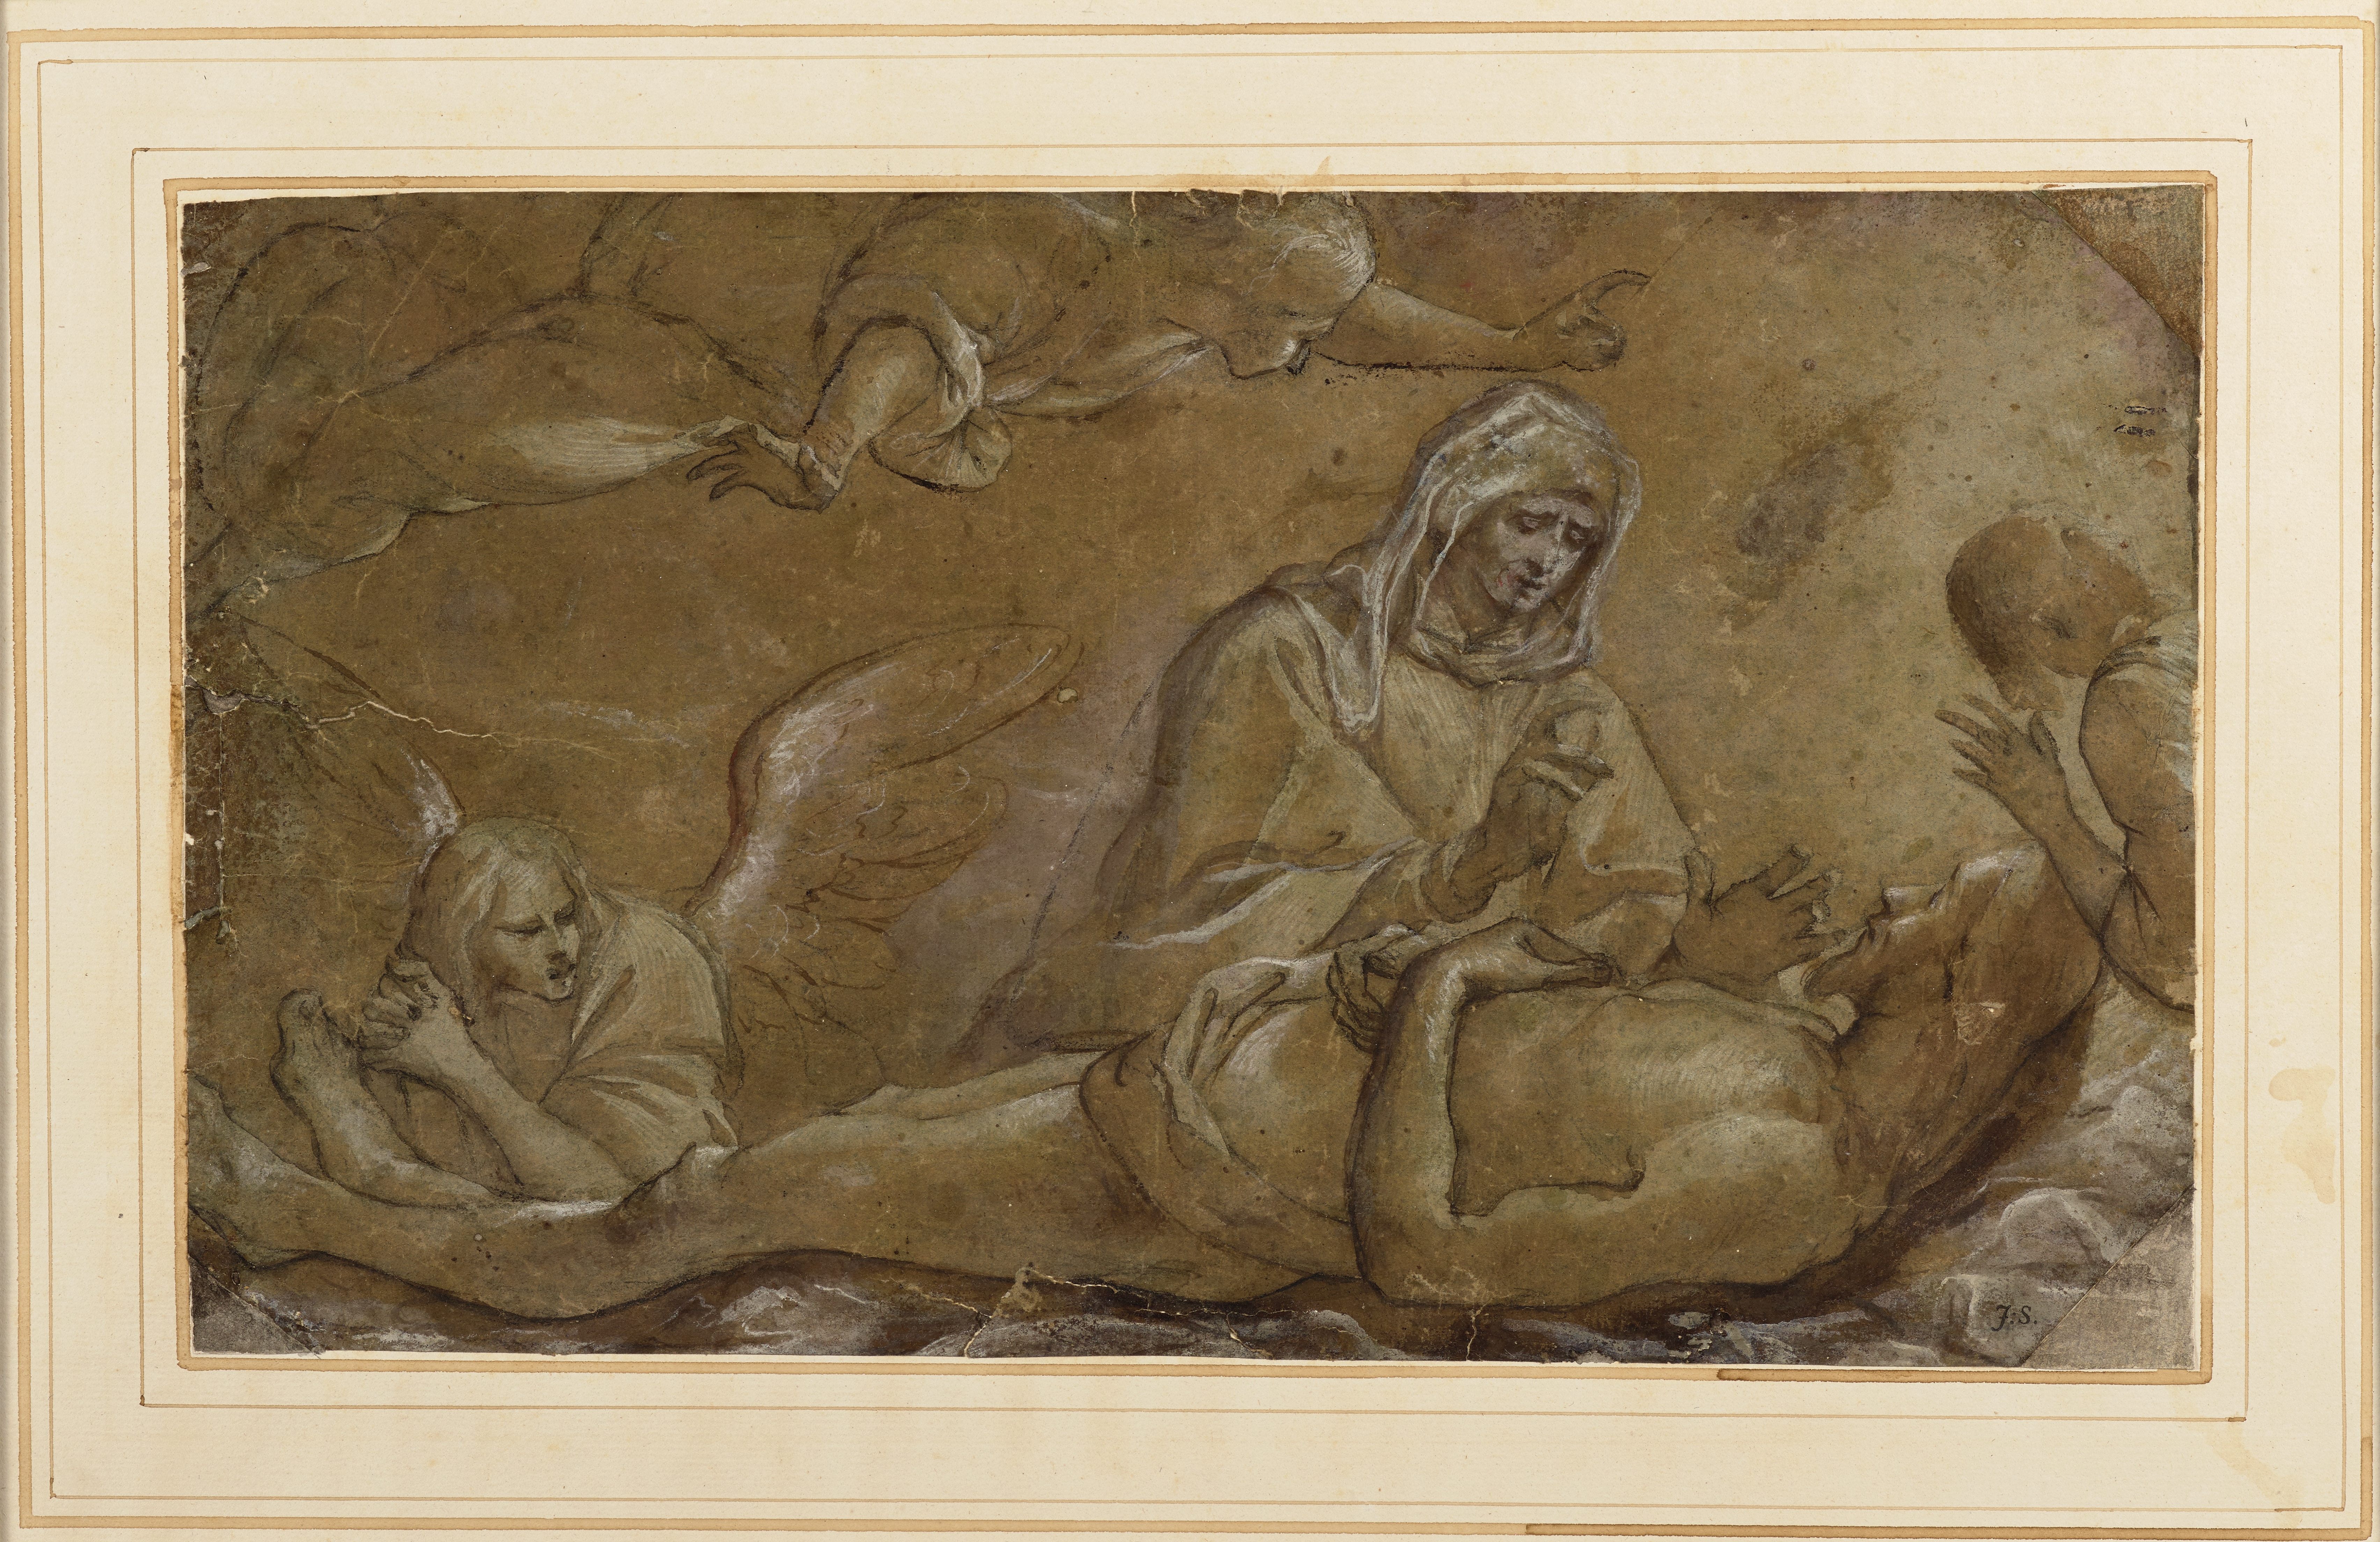 La Vierge pleurant le corps du Christ entouré d'anges by Morazzone